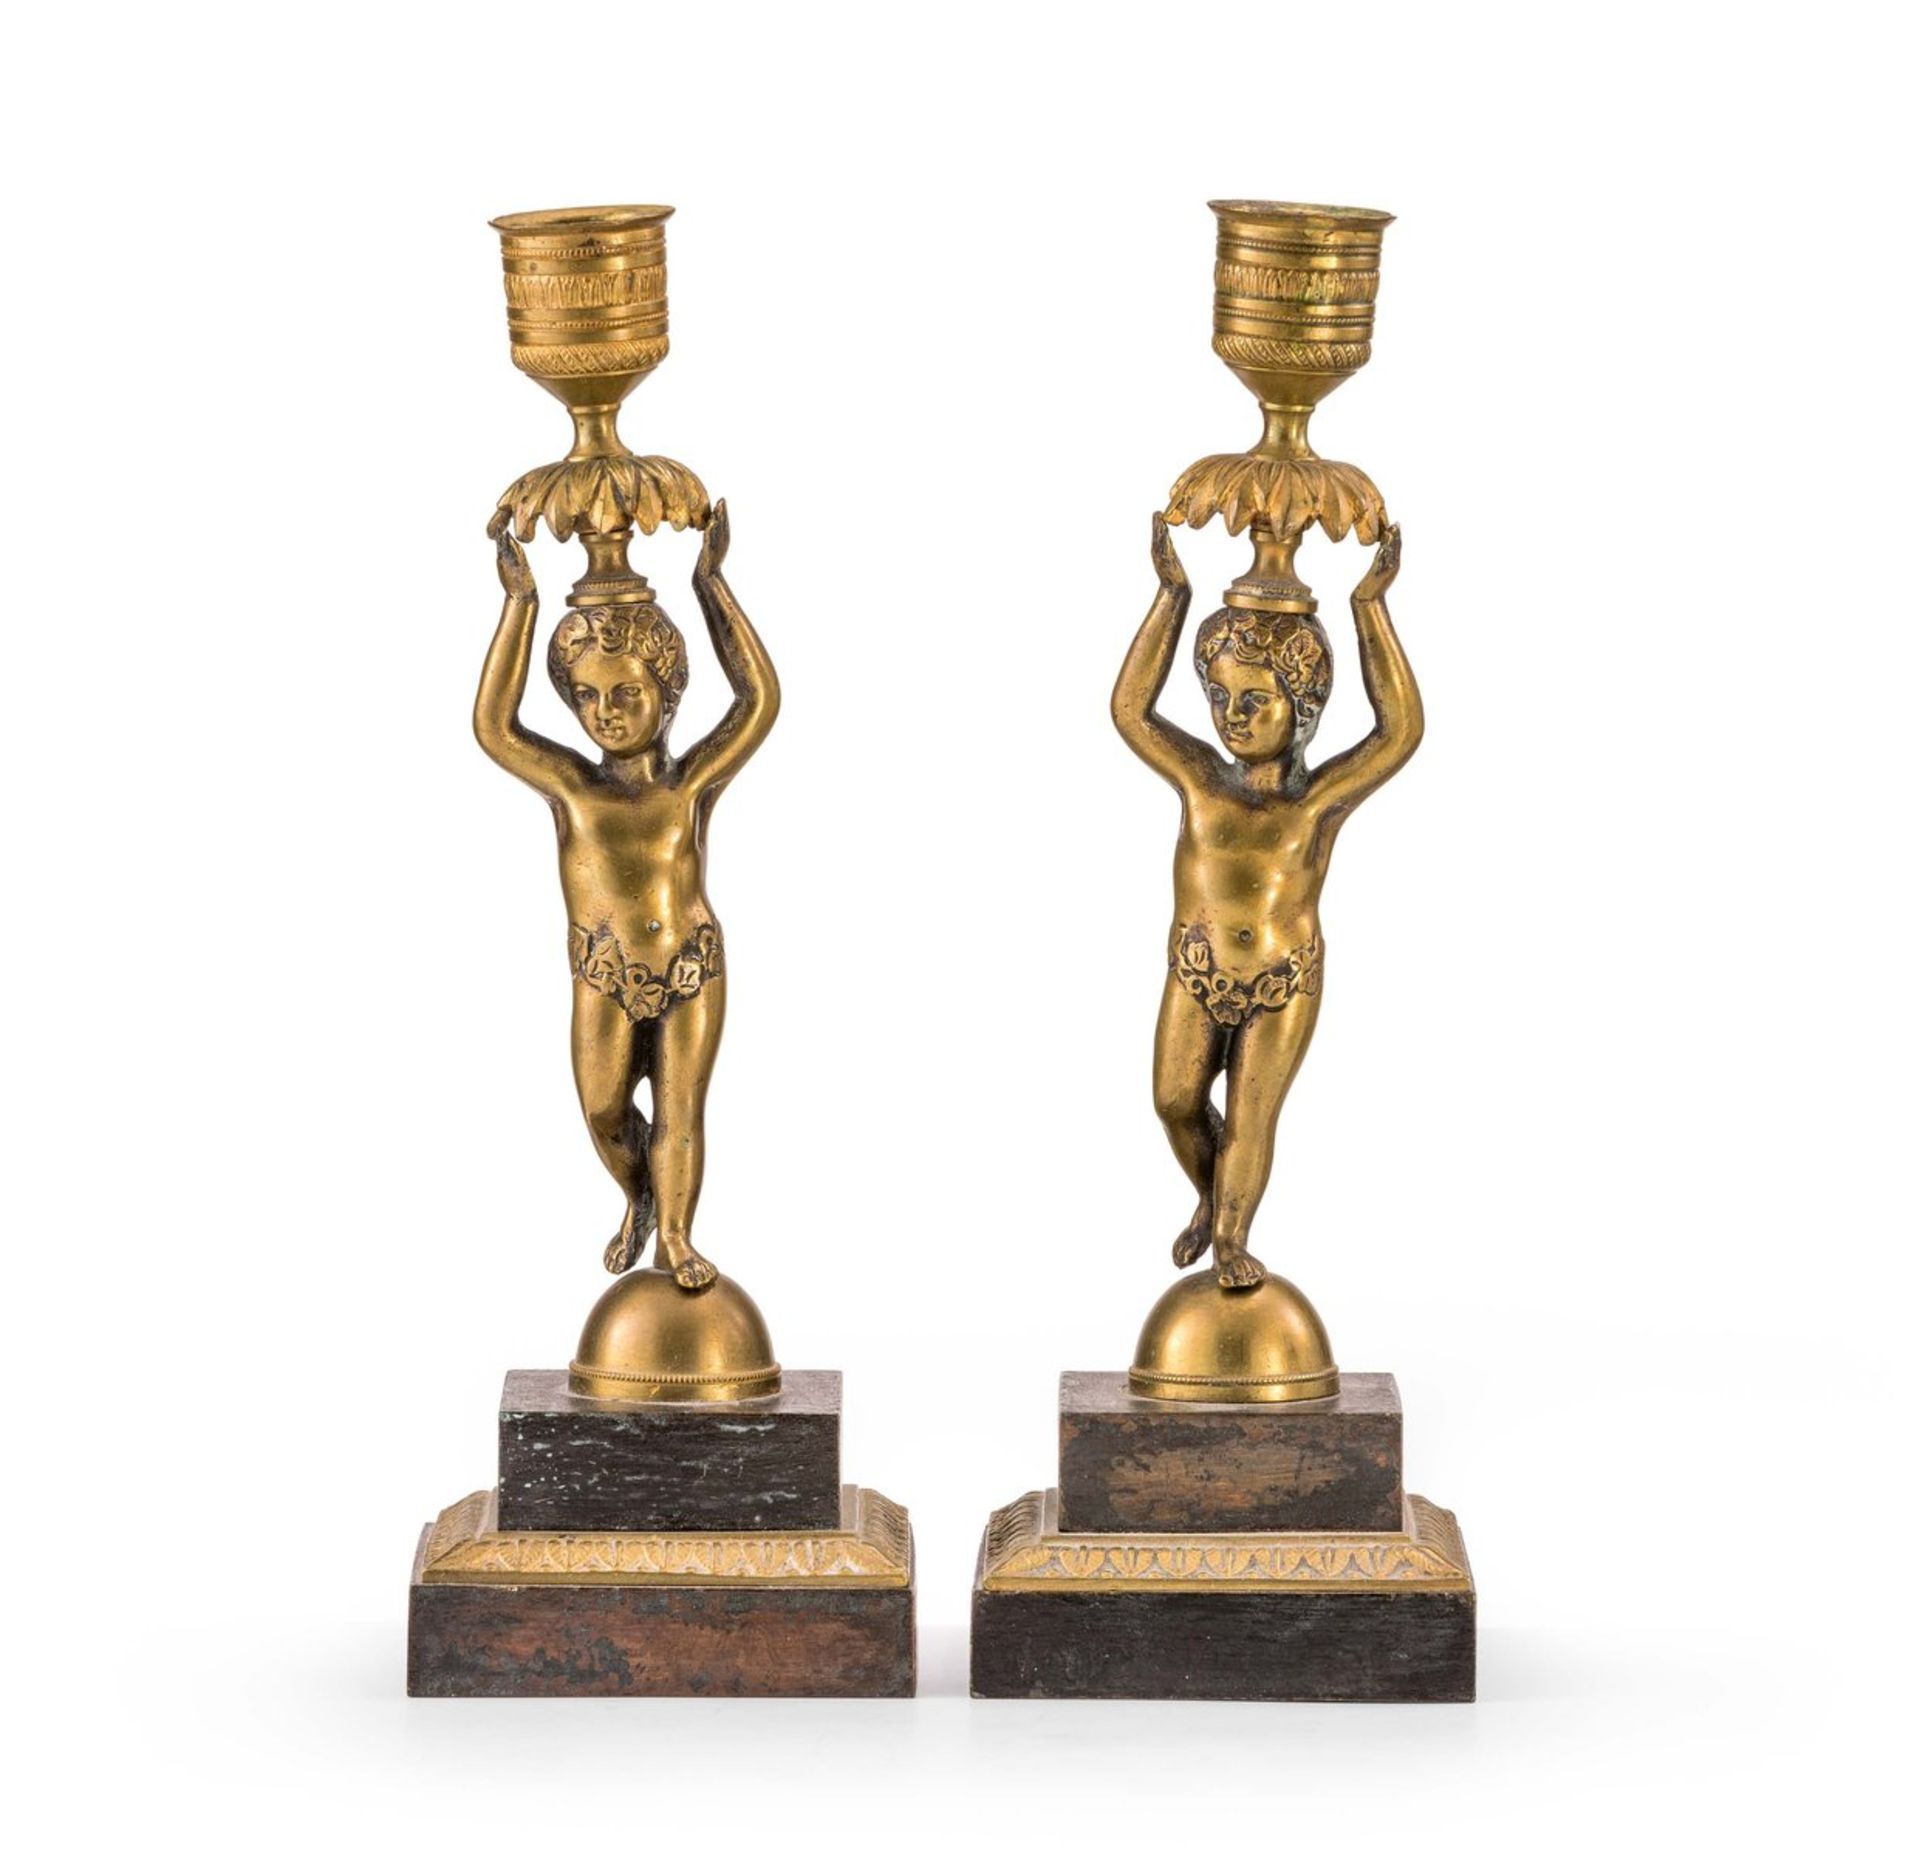 Zwei Figurenleuchter im Louis-XVI-Stil19. Jh.Bronze, teils dunkel patiniert. Quadratischer,